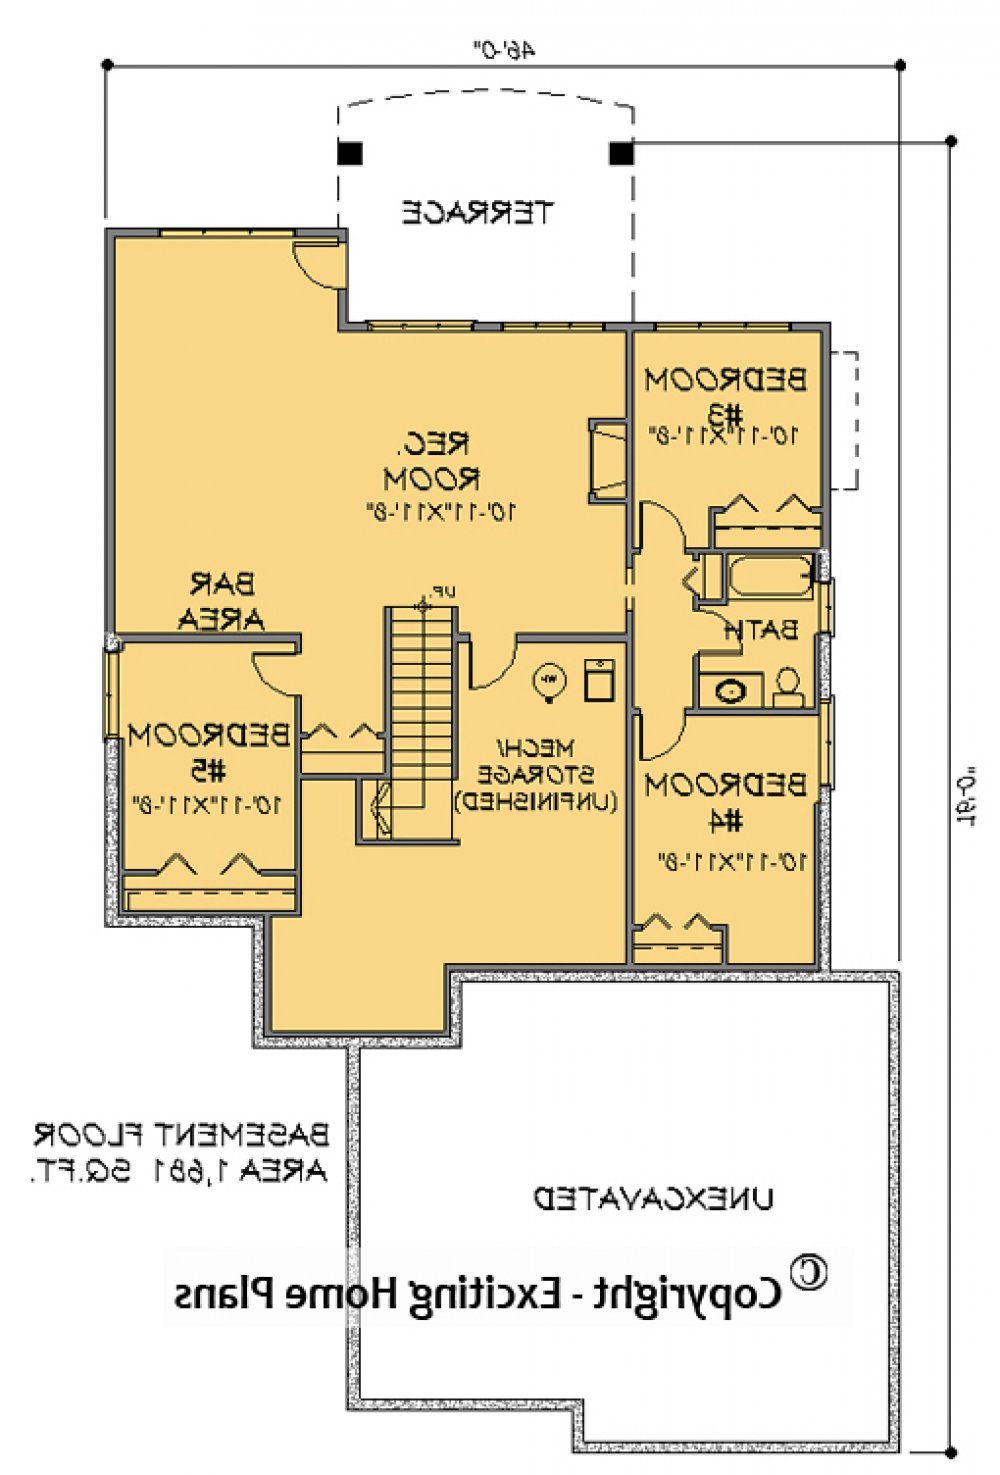 House Plan E1140-10 Lower Floor Plan REVERSE